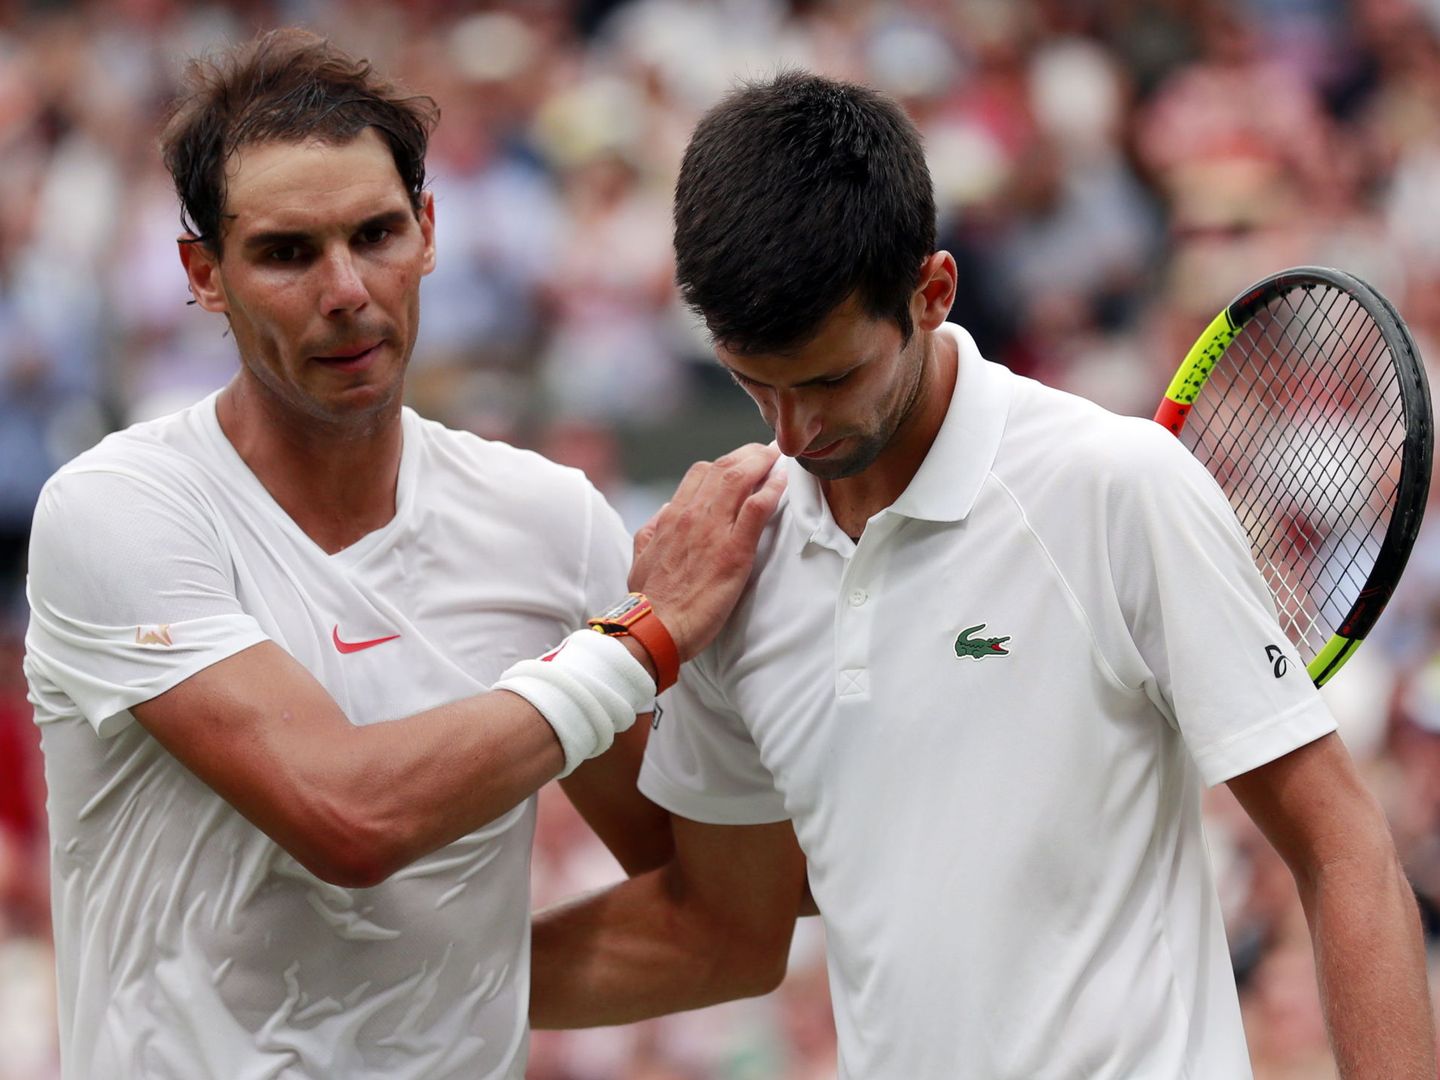 El partido entre Nadal y Djokovic se retrasó enormemente por la falta de un tiebreak en el quinto set. (EFE)